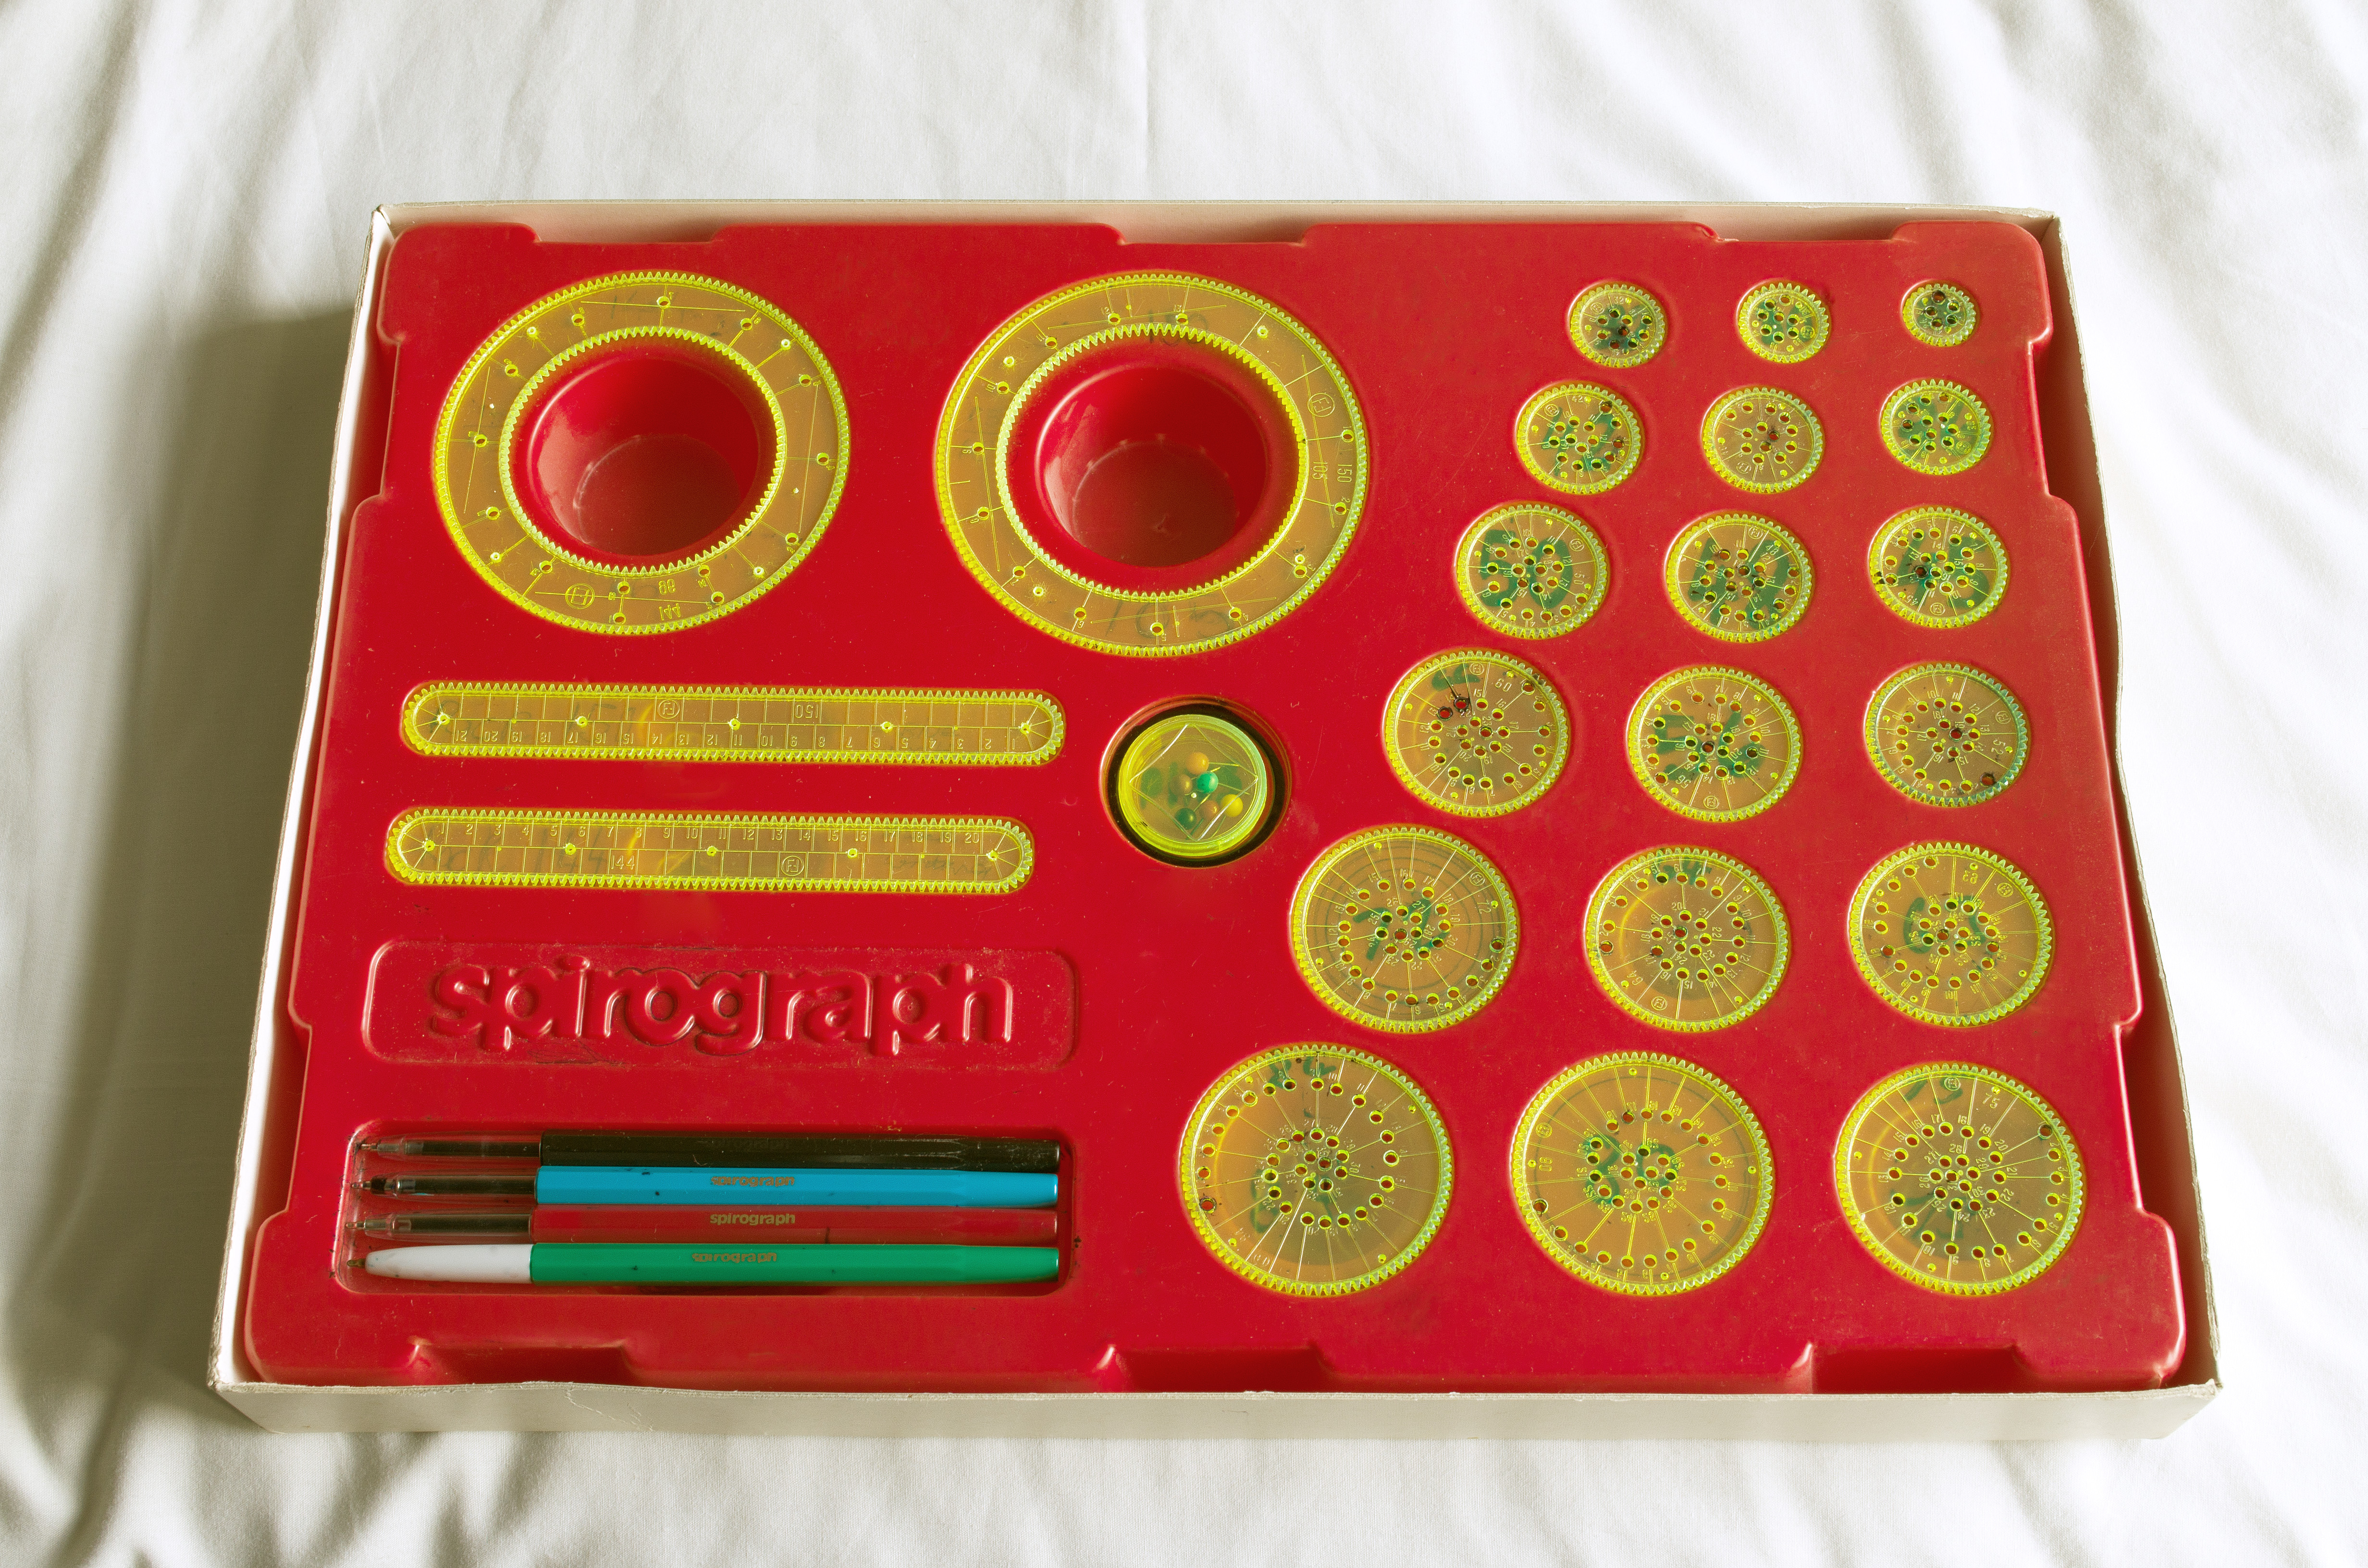 26Stk Spirograph Zeichnen Schablone,Spirale Musterung Lineal,Bildung Spielzeug 